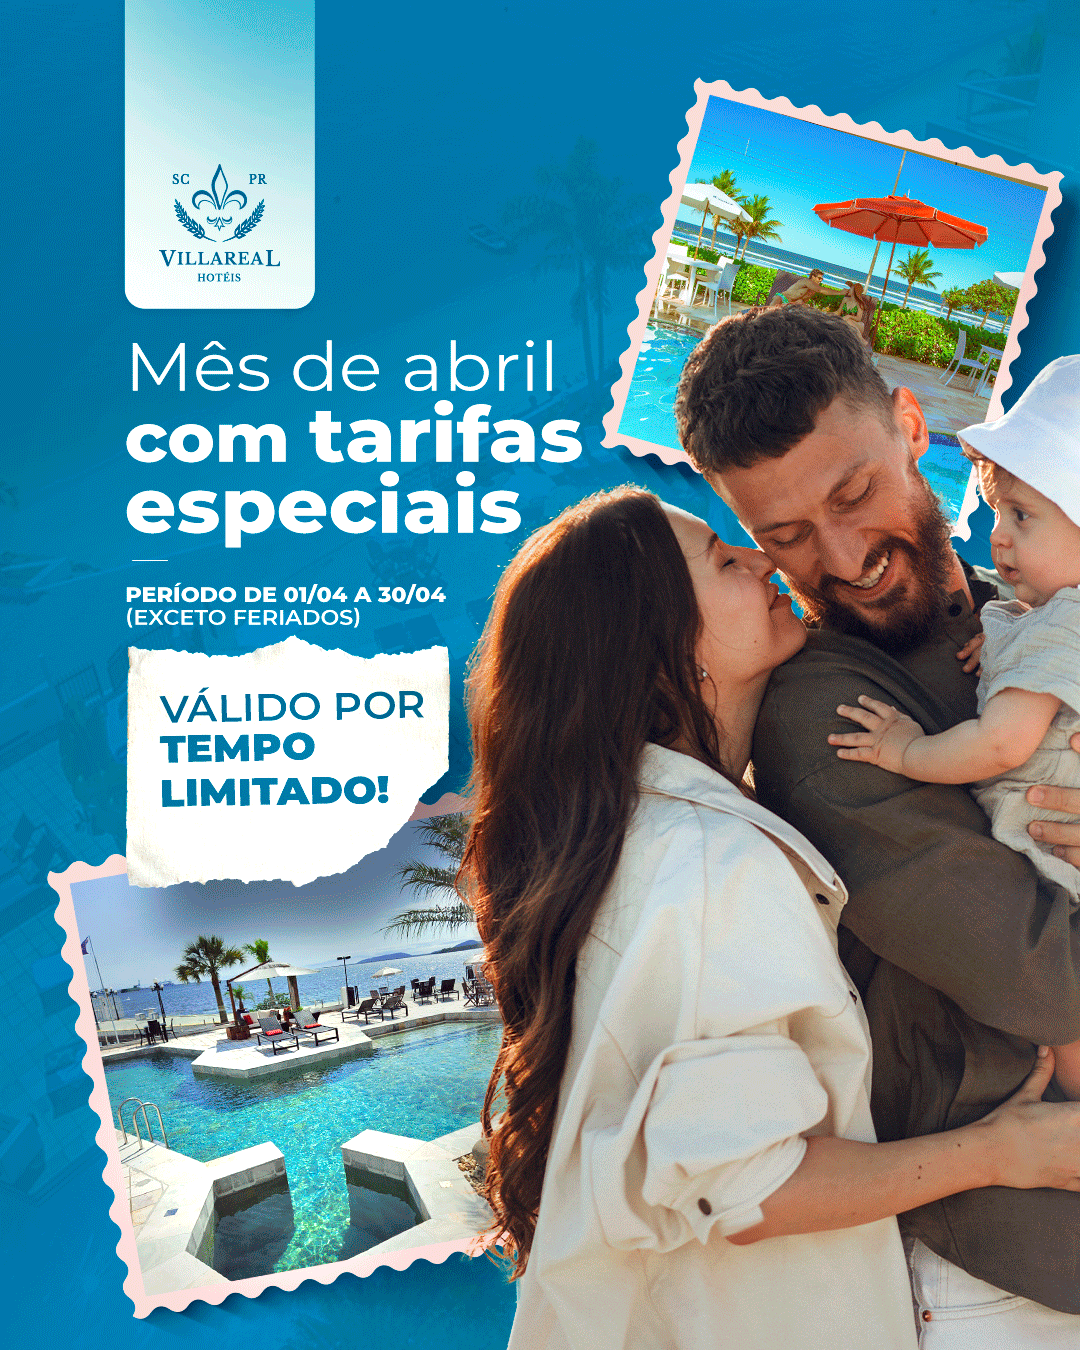 tarifas especiais por tempo limitado para o mês de abril nos hoteis villareal em guaratuba e são francisco do sul